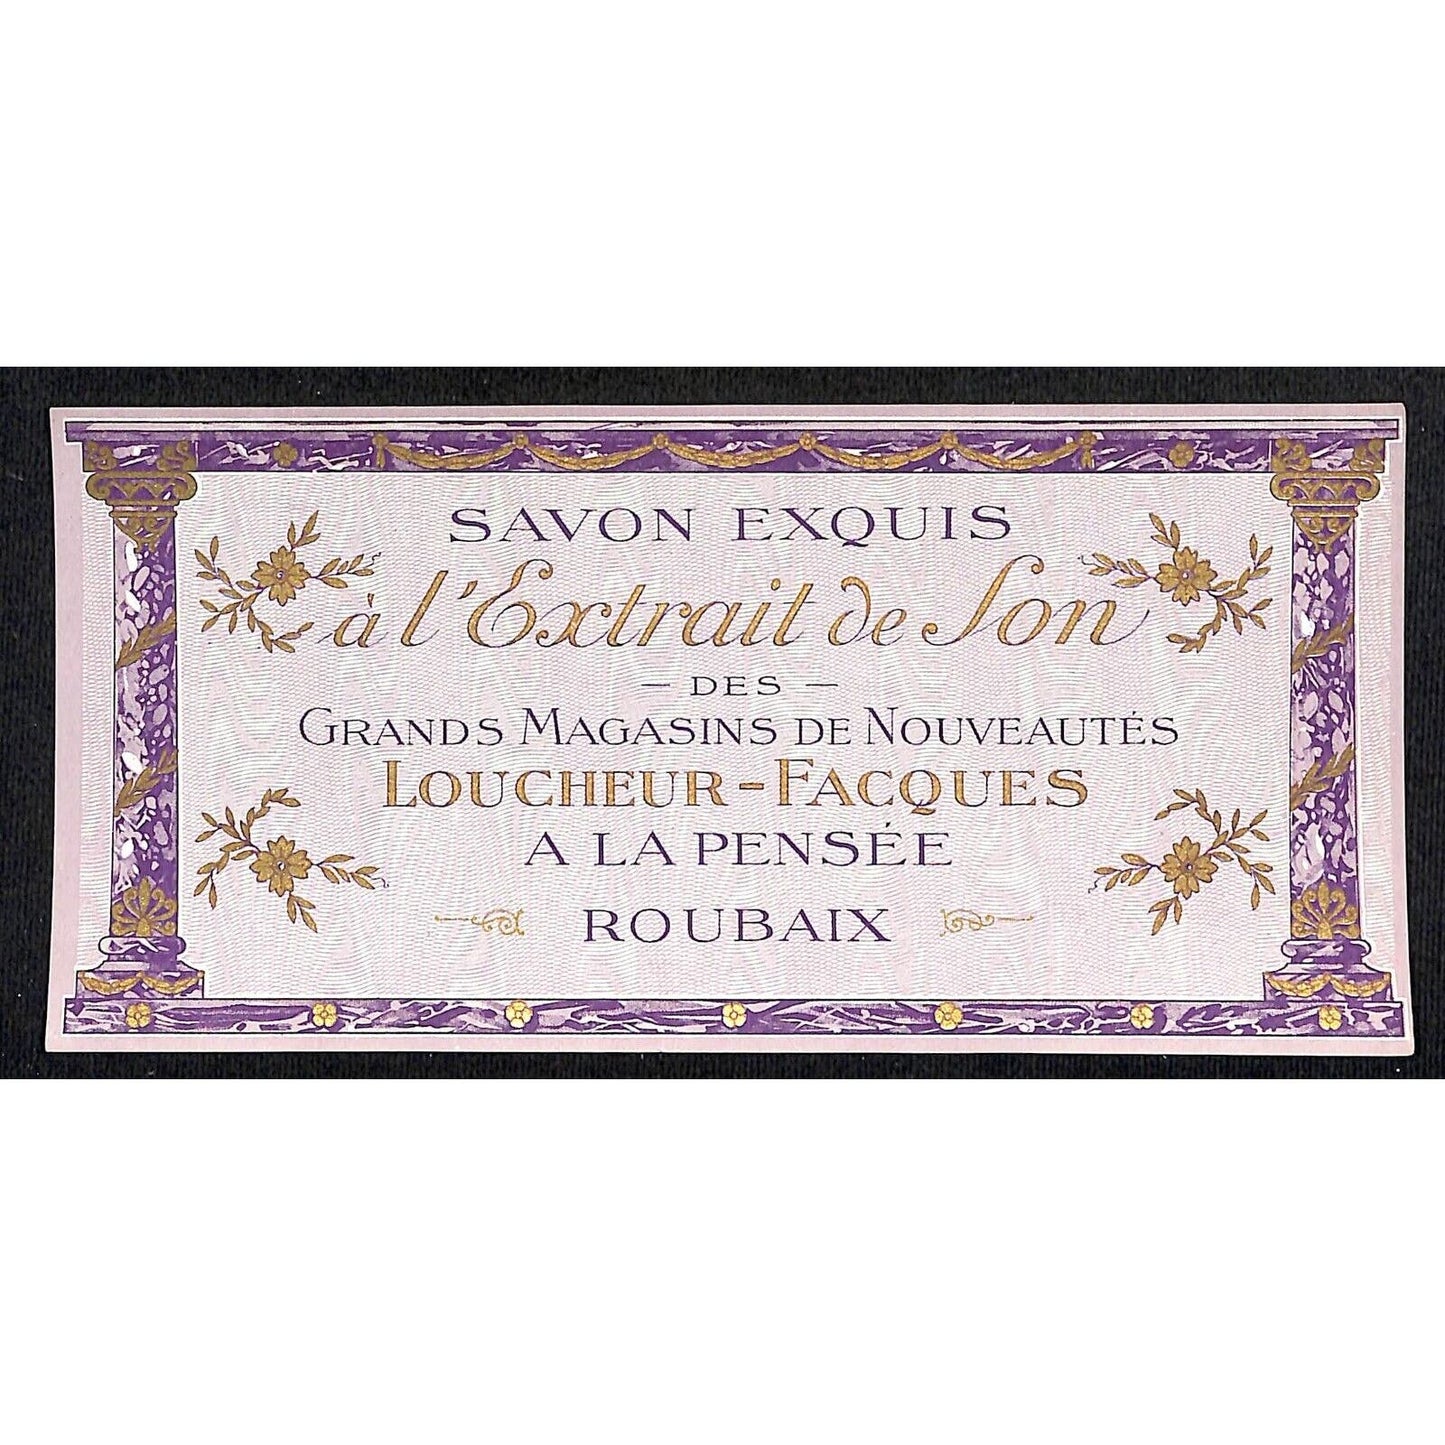 Savon Exquis à l'Extrait de Son - Roubaix French Soap Label NOS VGC Gilt